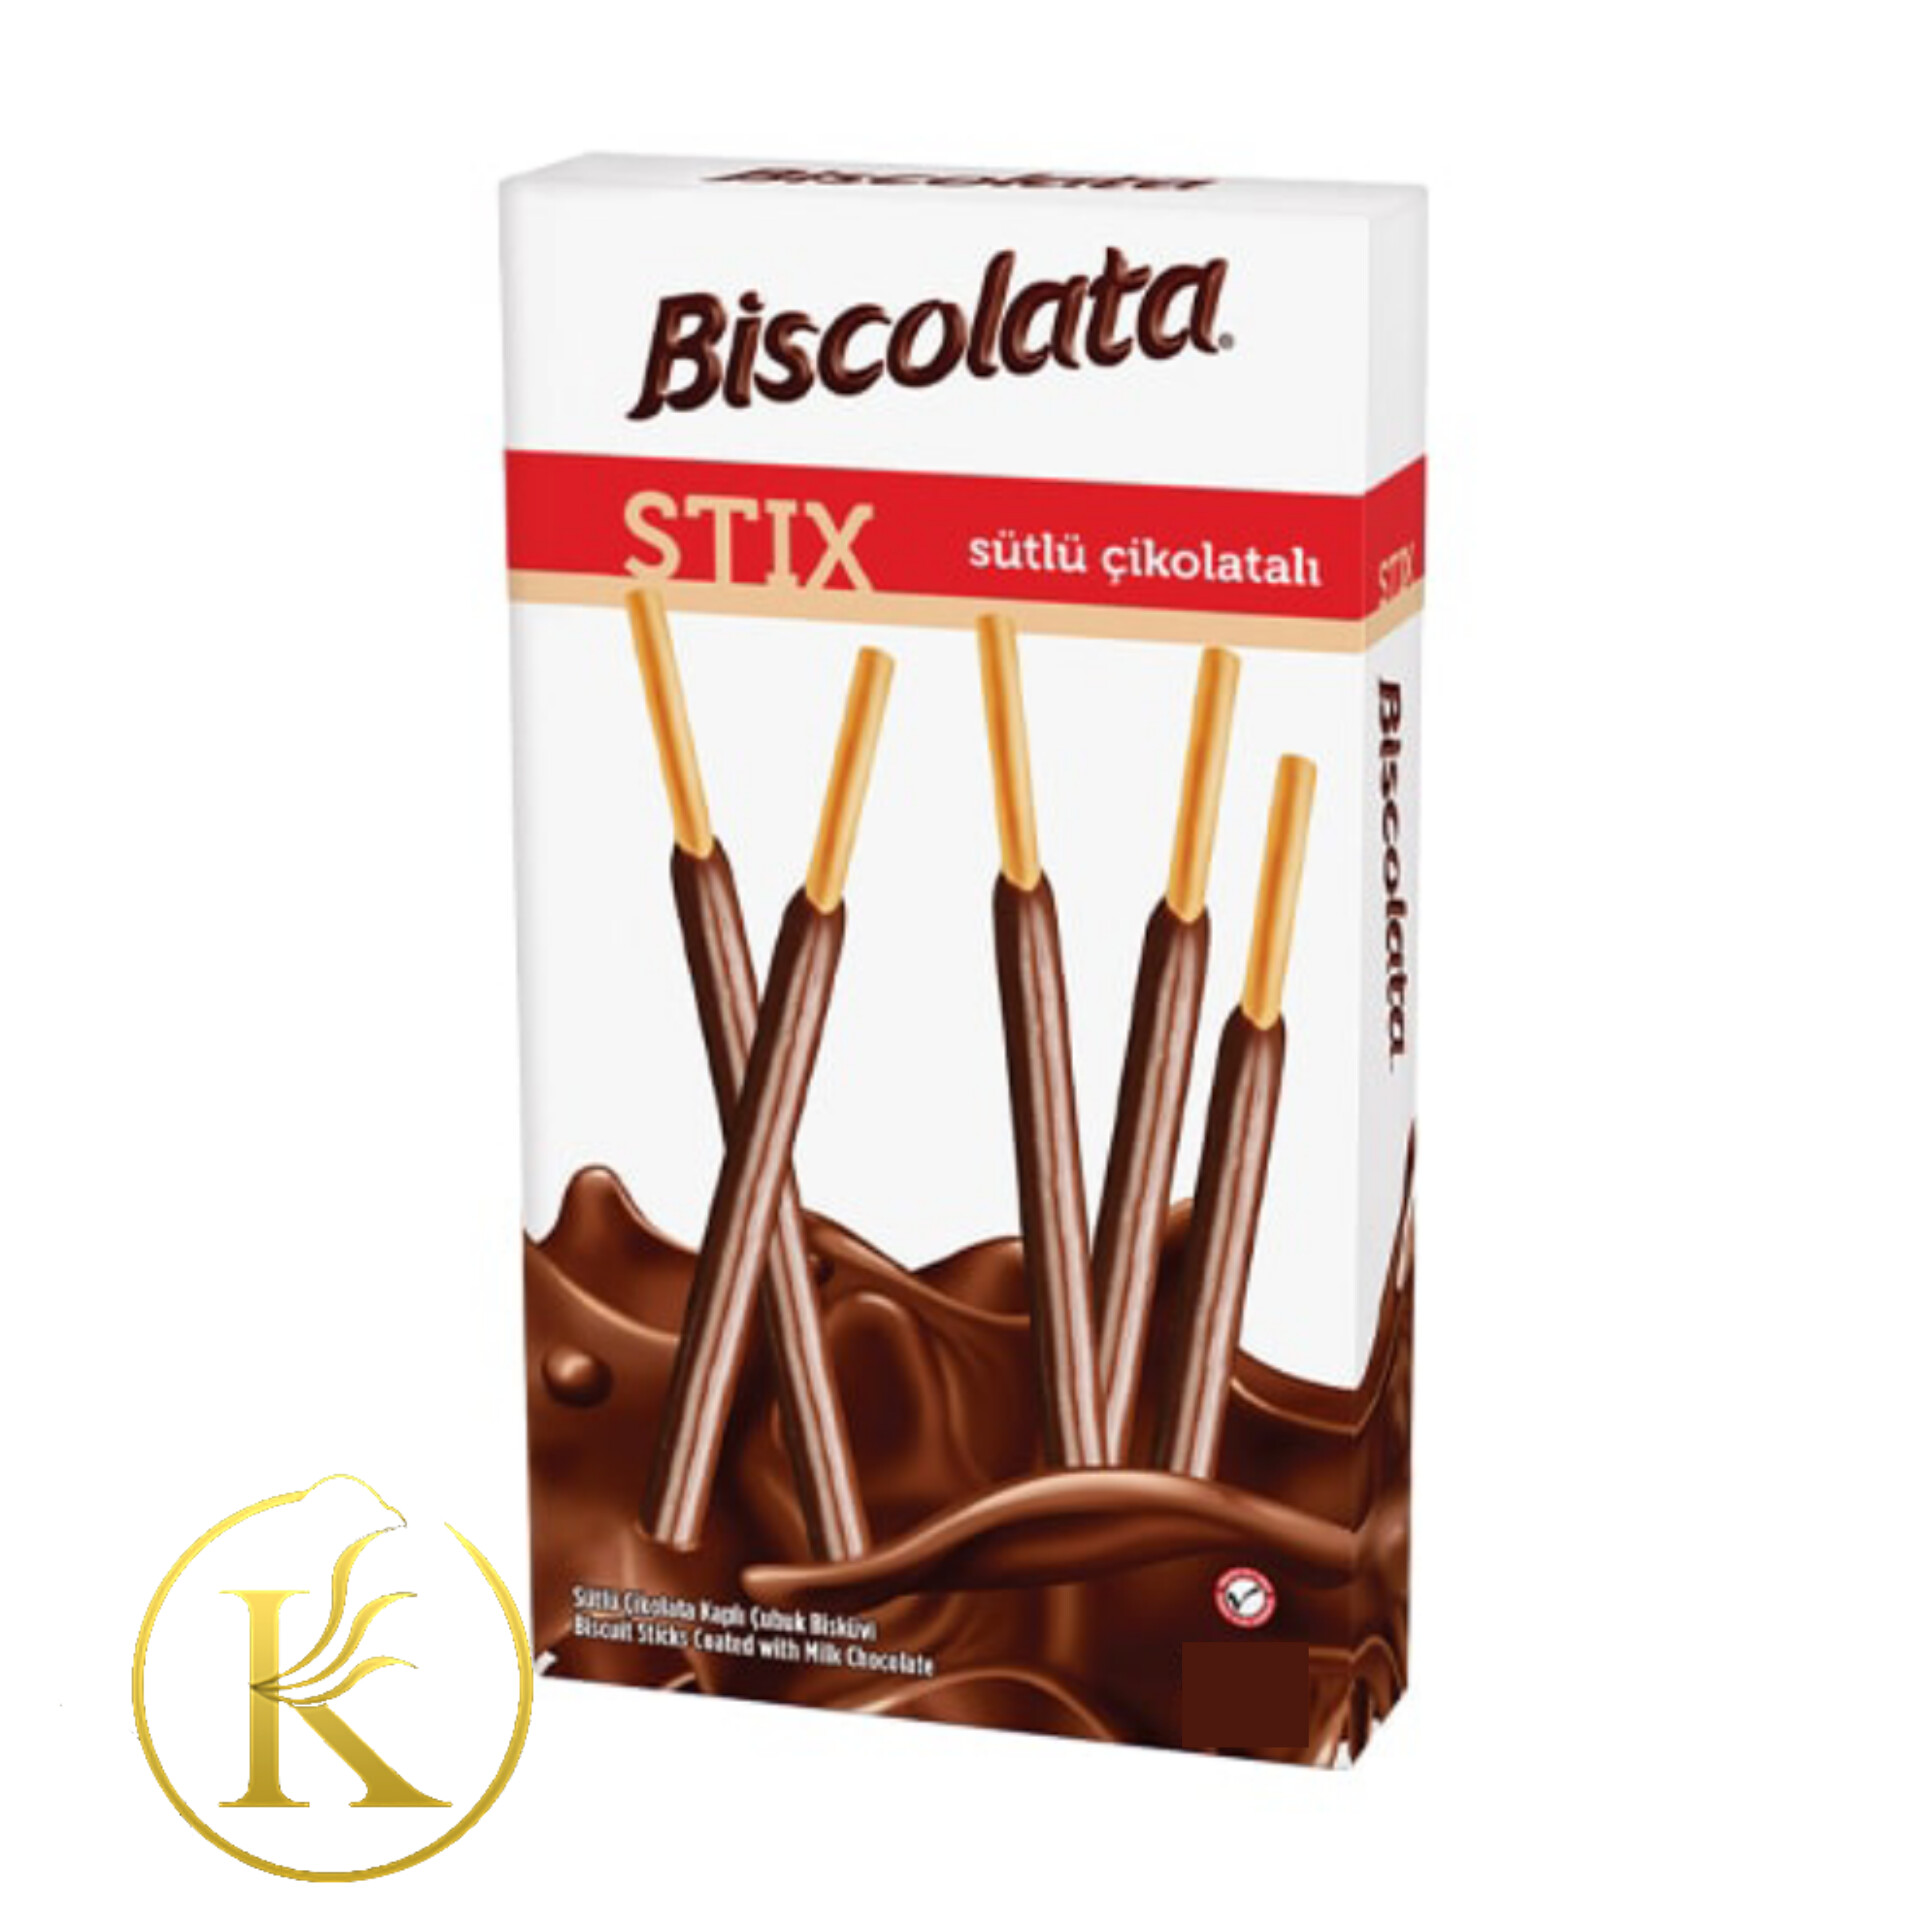 چوب شور شکلات شیری بیسکولاتا (۳۴ گرم) biscolata